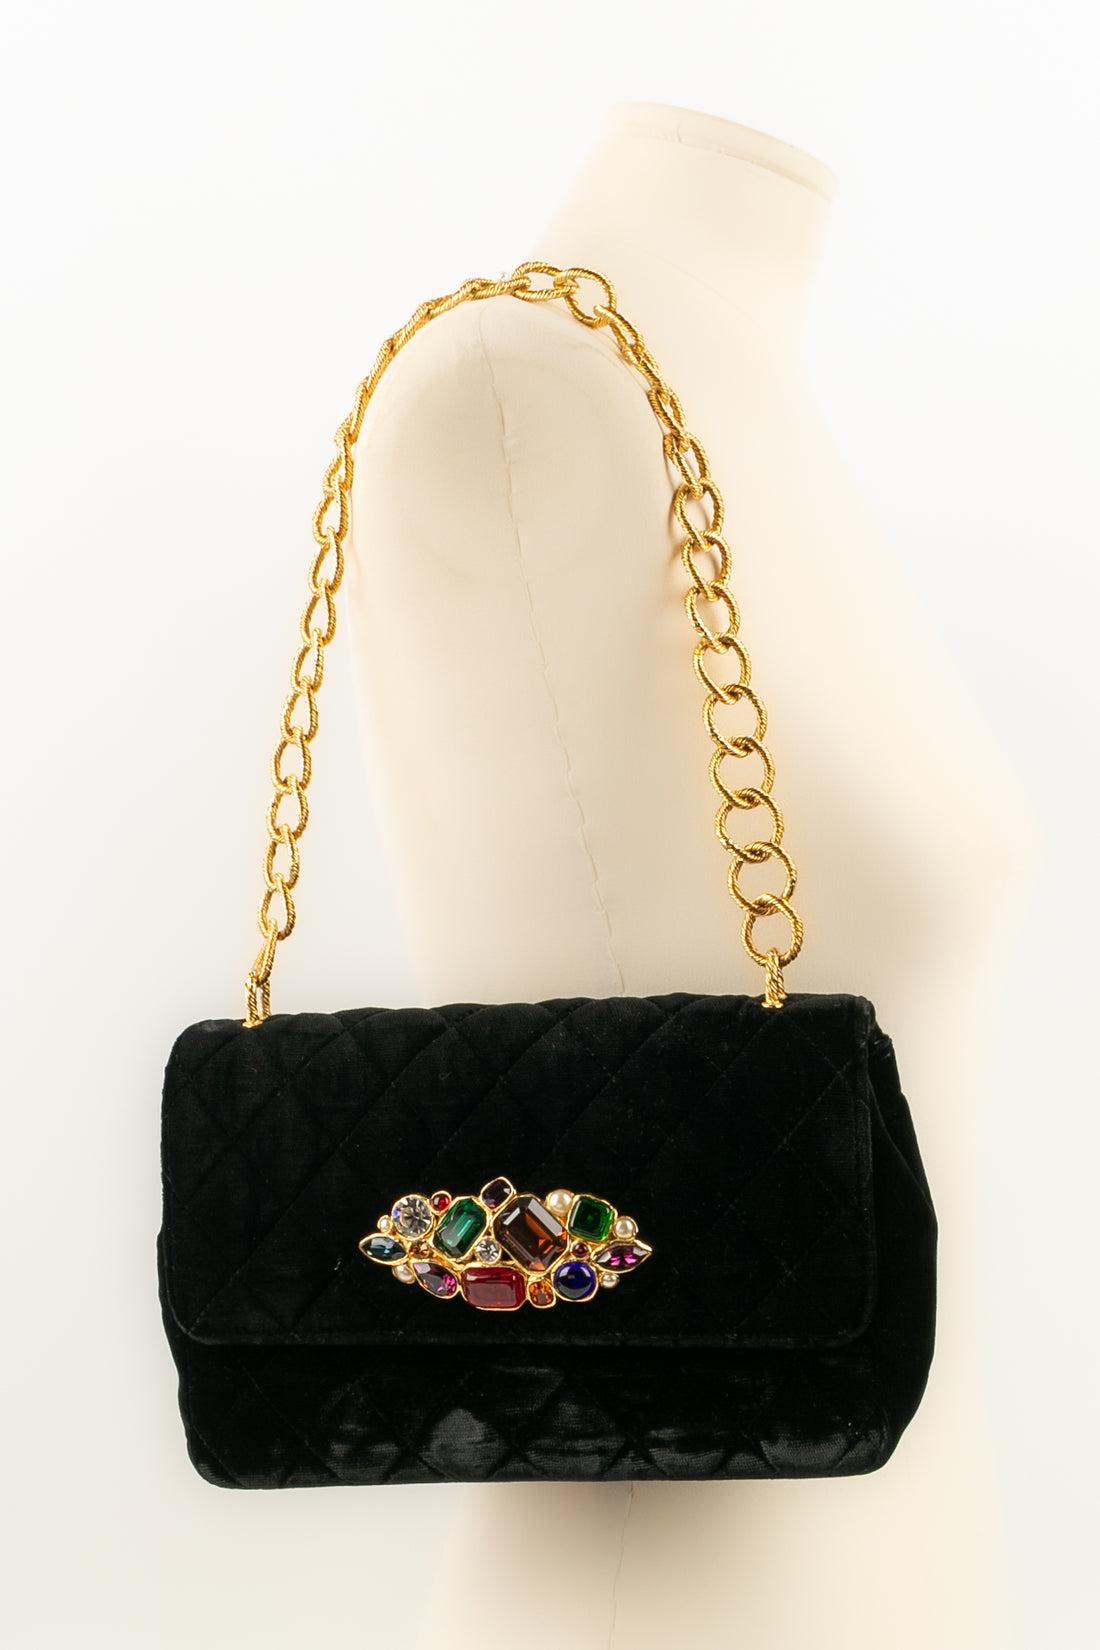 Chanel Jewel Bag in Black Velvet, 1989 / 1991 For Sale 10